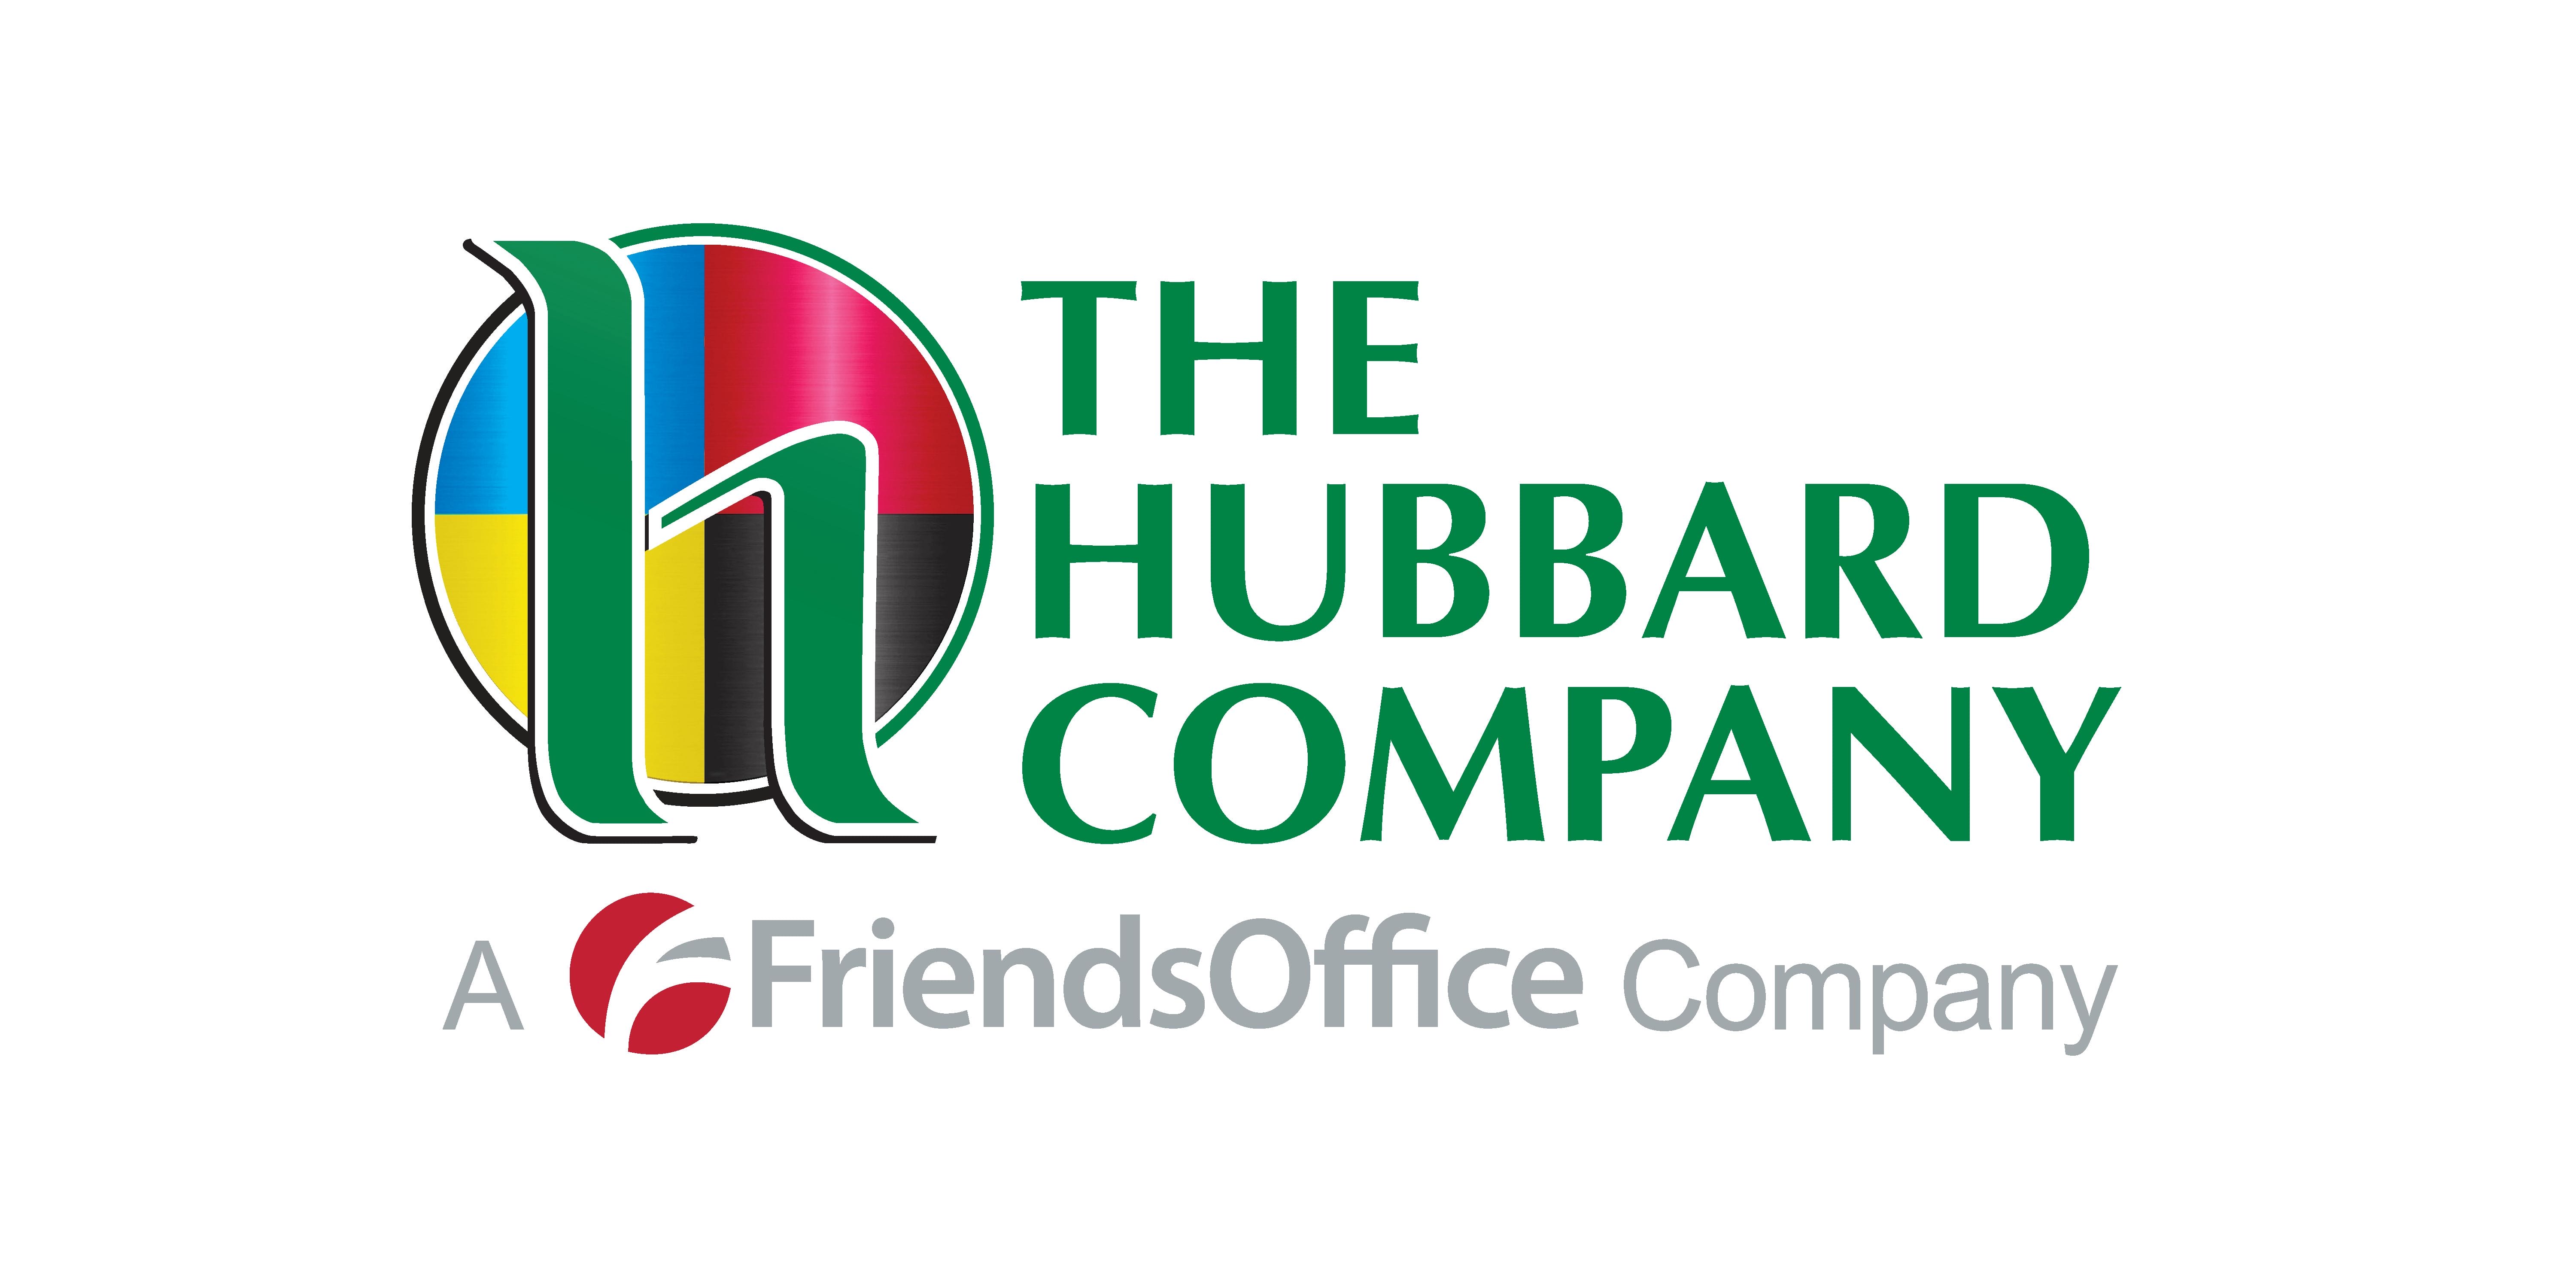 The Hubbard Company A FriendsOffice Company